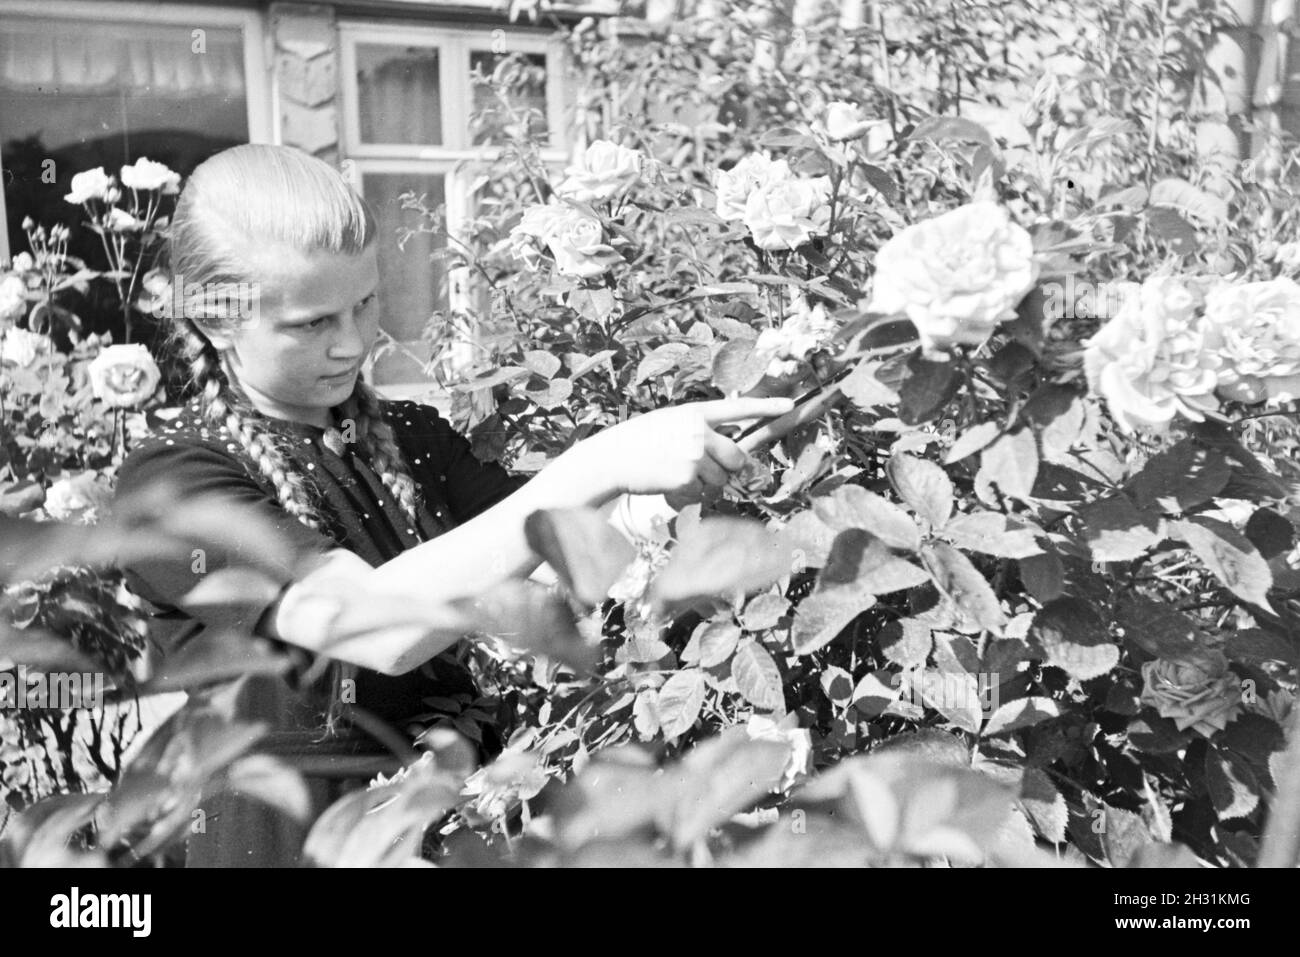 Schülerin des Kolonial Schülerheims Harzburg bei der Gartenarbeit, Deutsches Reich 1937. Student of the colonial residential school Harzburg working in the garden; Germany 1937. Stock Photo